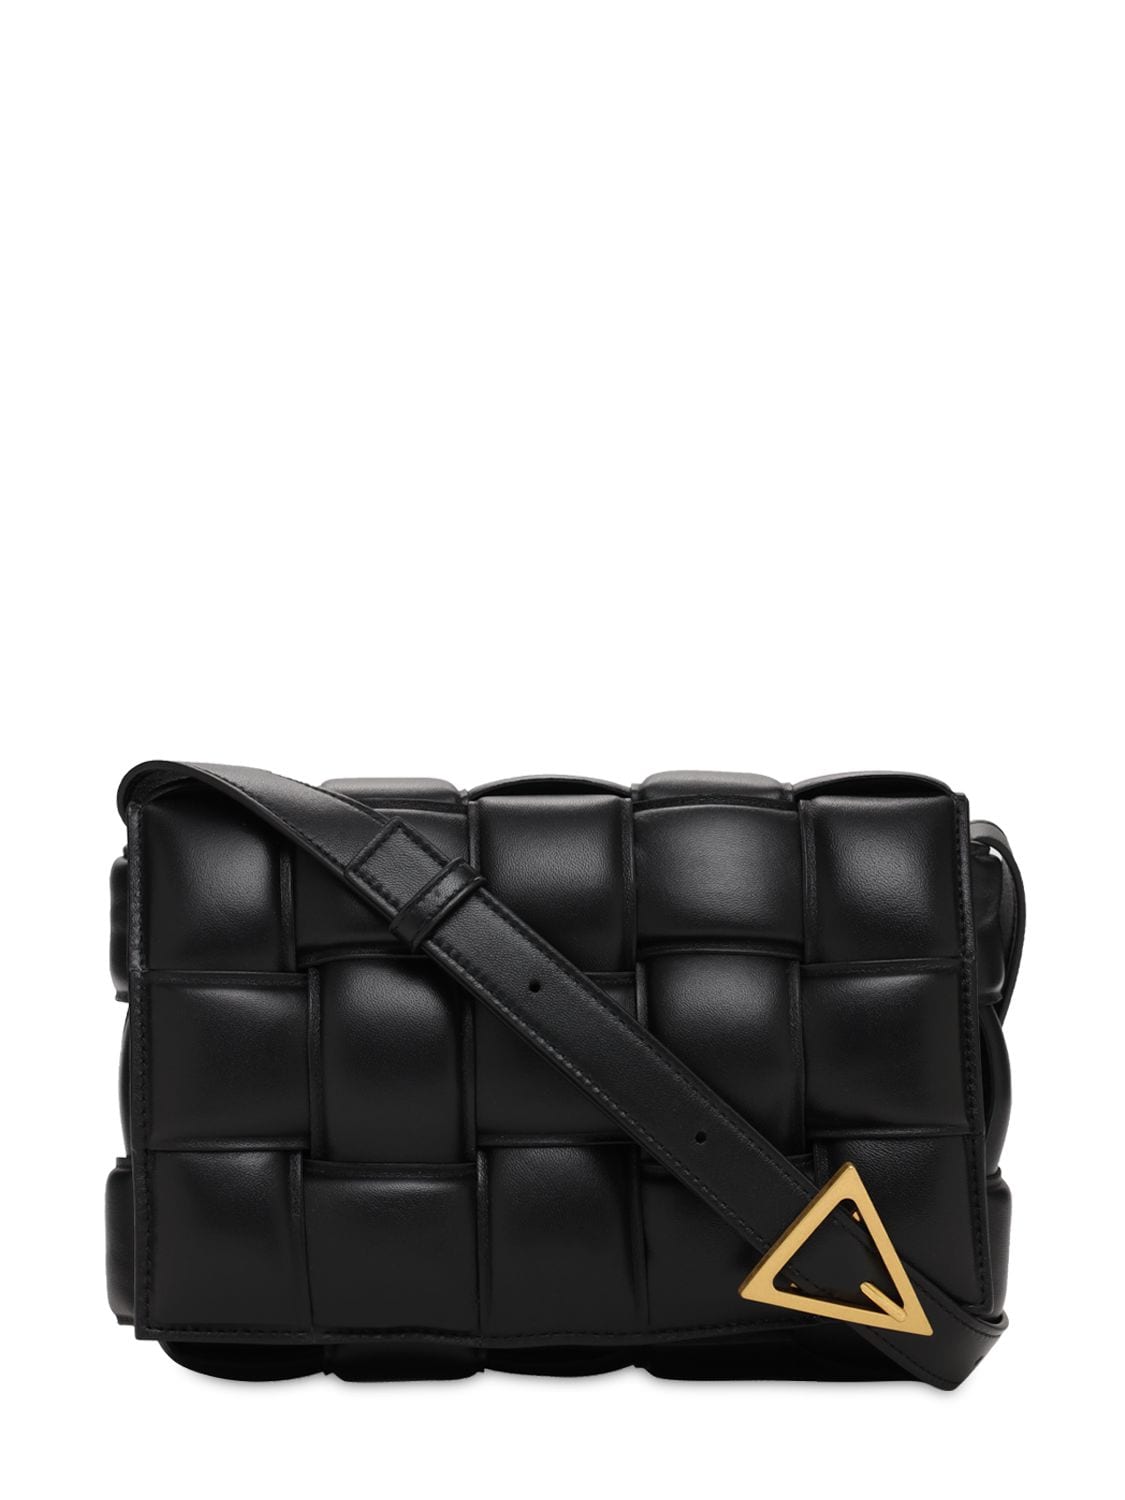 Bottega Veneta Padded Cassette Leather Bag In Black,gold